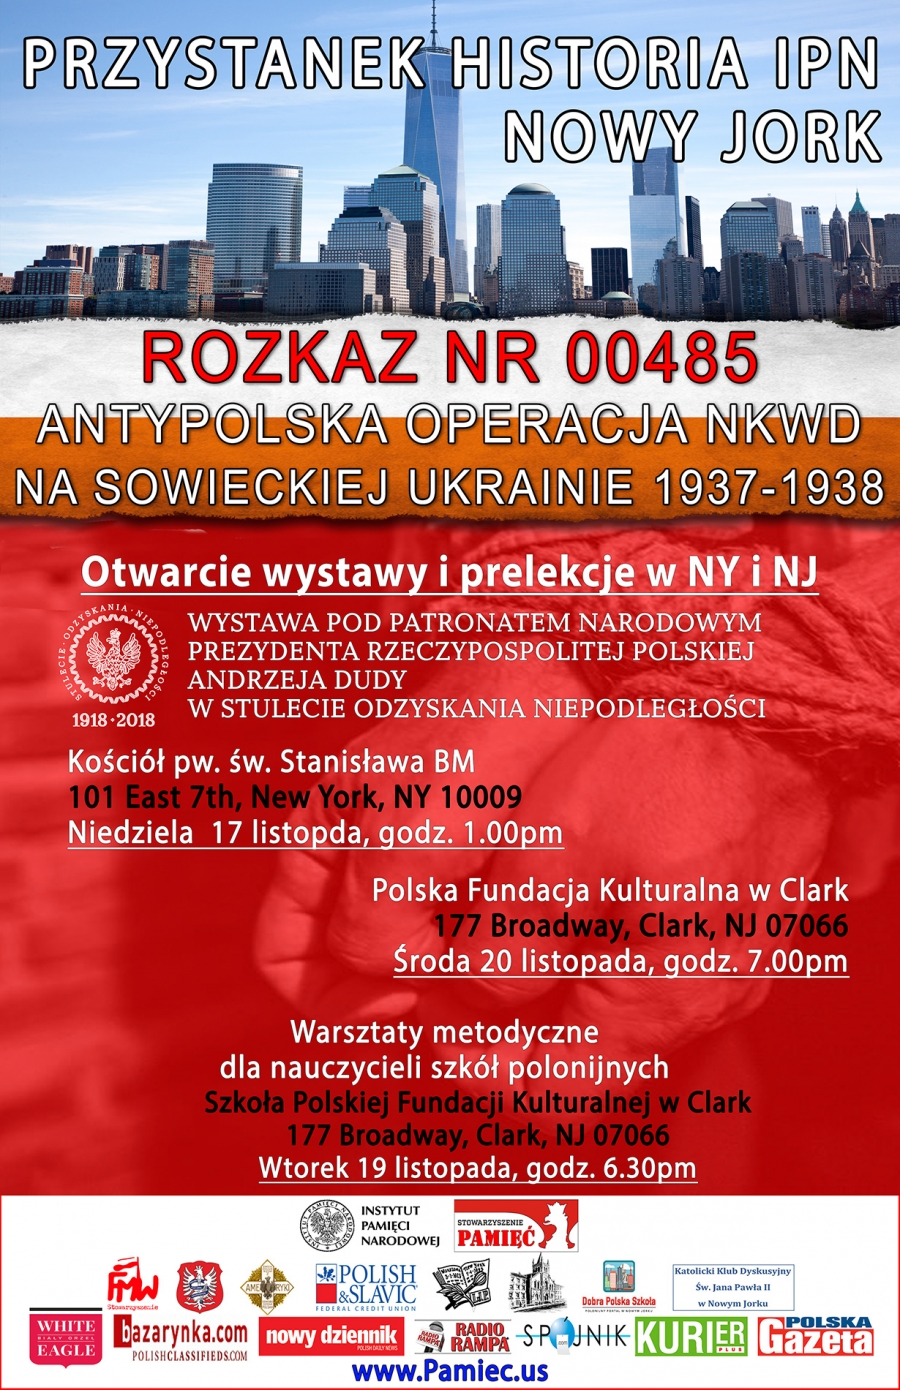 Przystanek Historia IPN - wystawa "Antypolska Operacja NKWD"